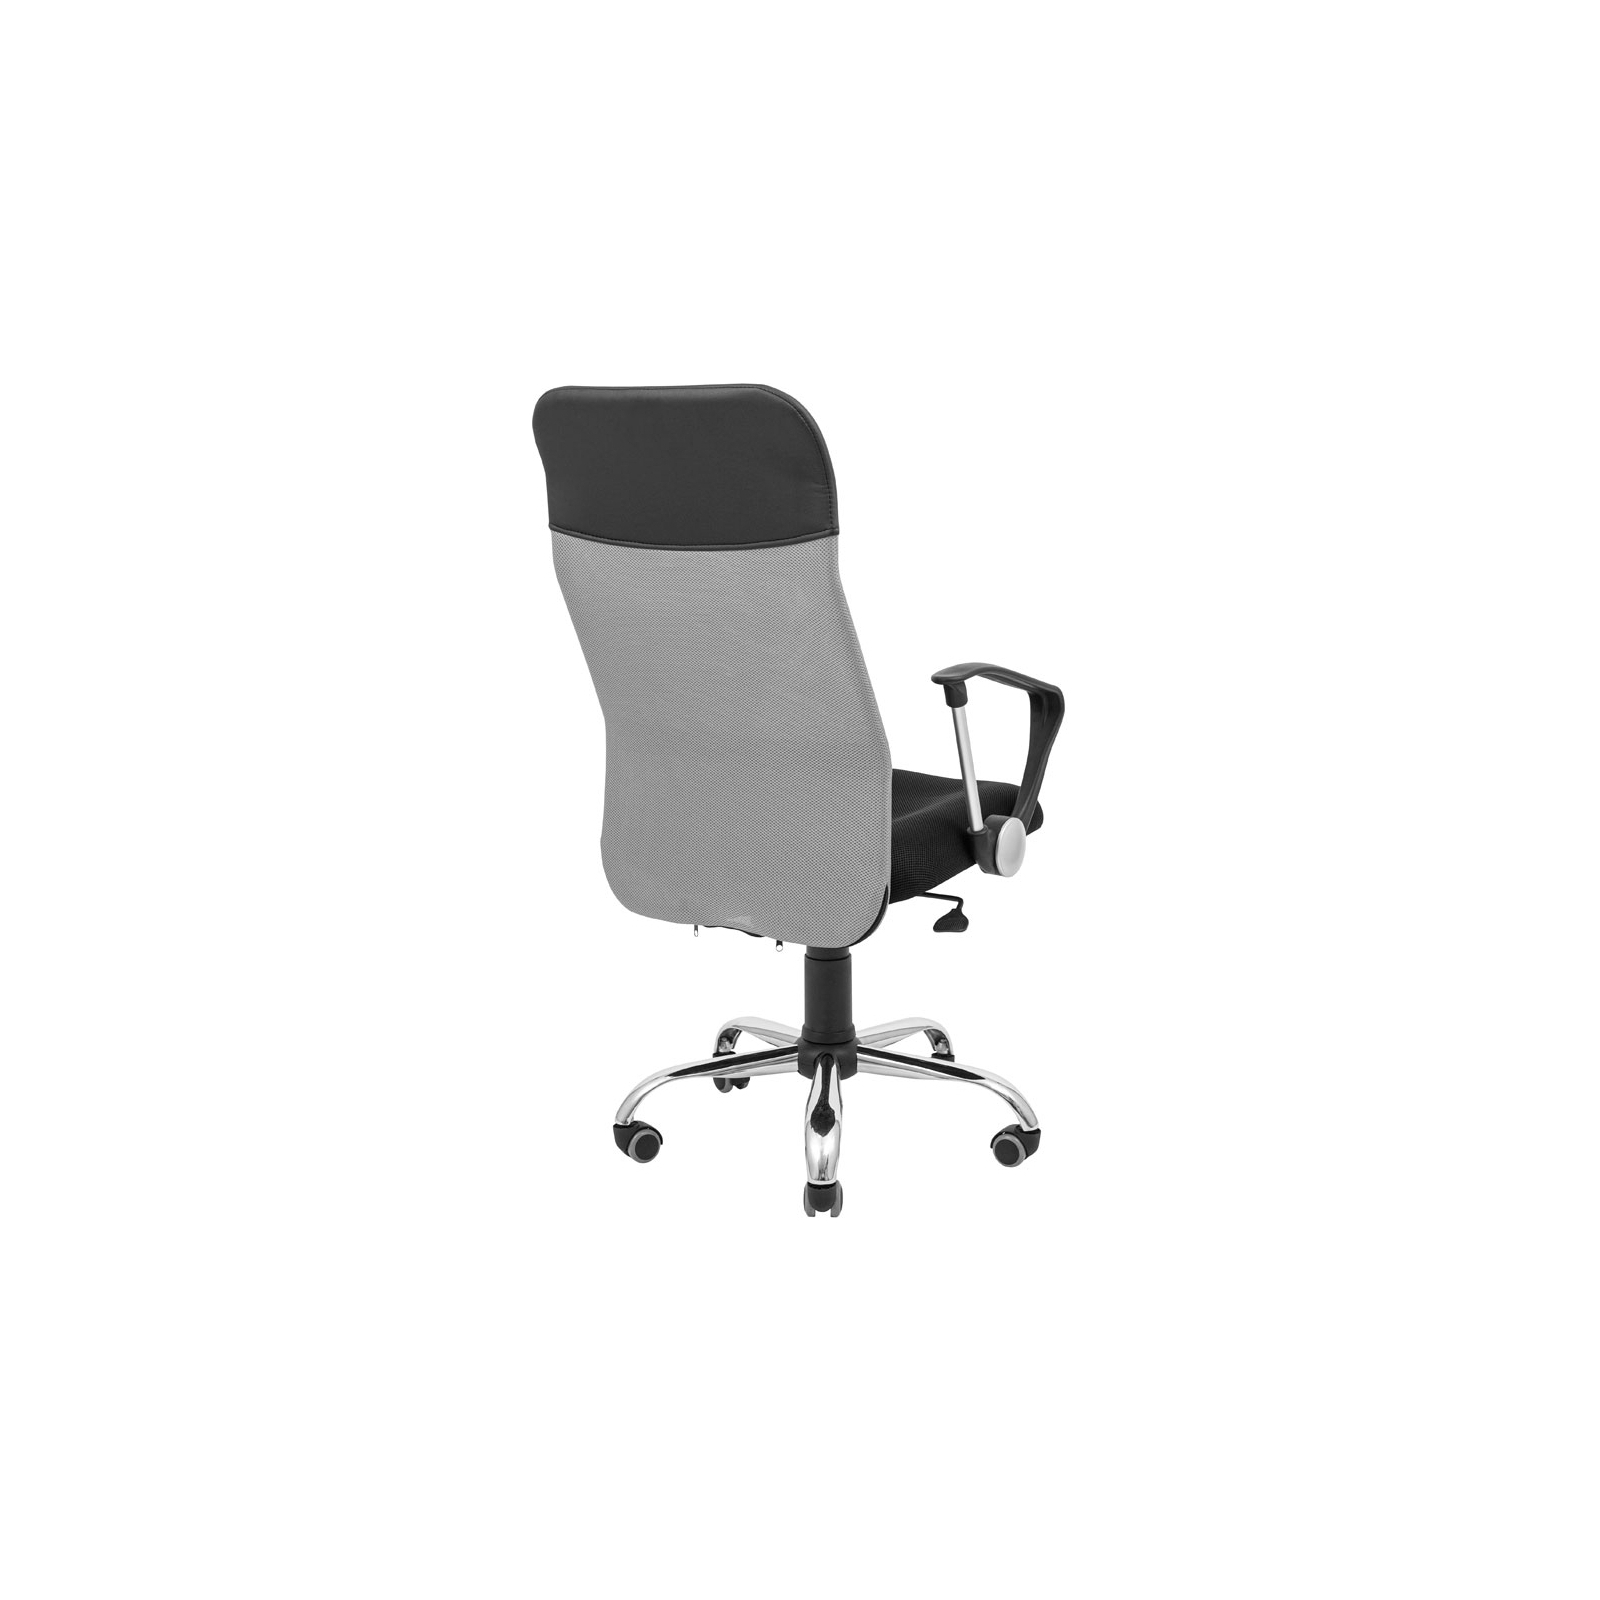 Офисное кресло Richman Ультра Ю Хром M-1 (Tilt) Сетка черная+зеленая (ADD0003103) изображение 4